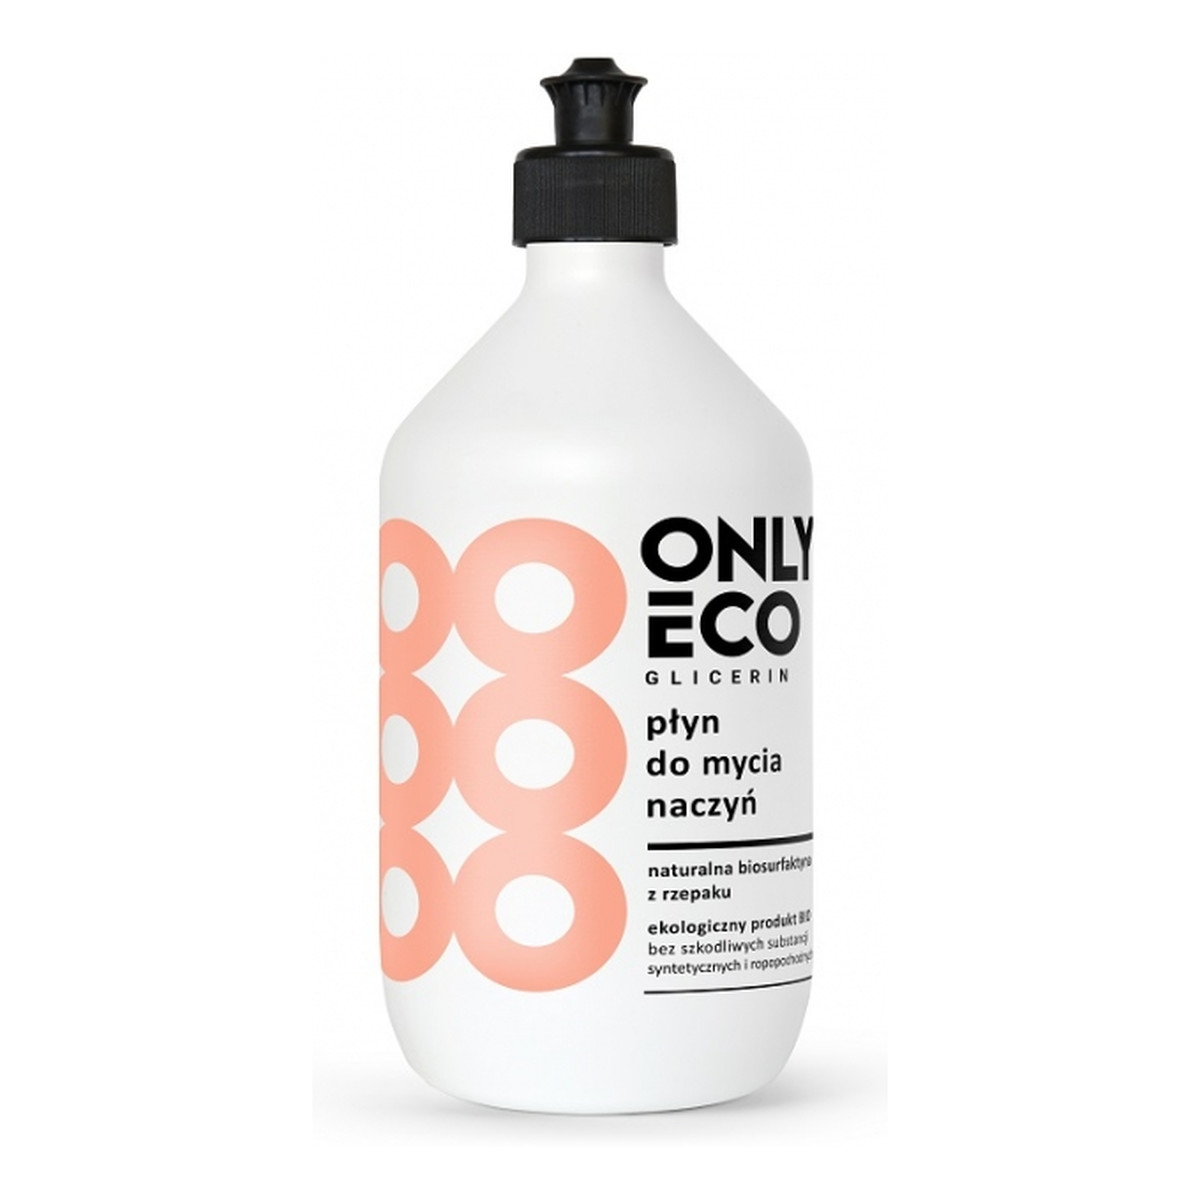 OnlyEco Glicerin ekologiczny płyn do mycia naczyń 500ml